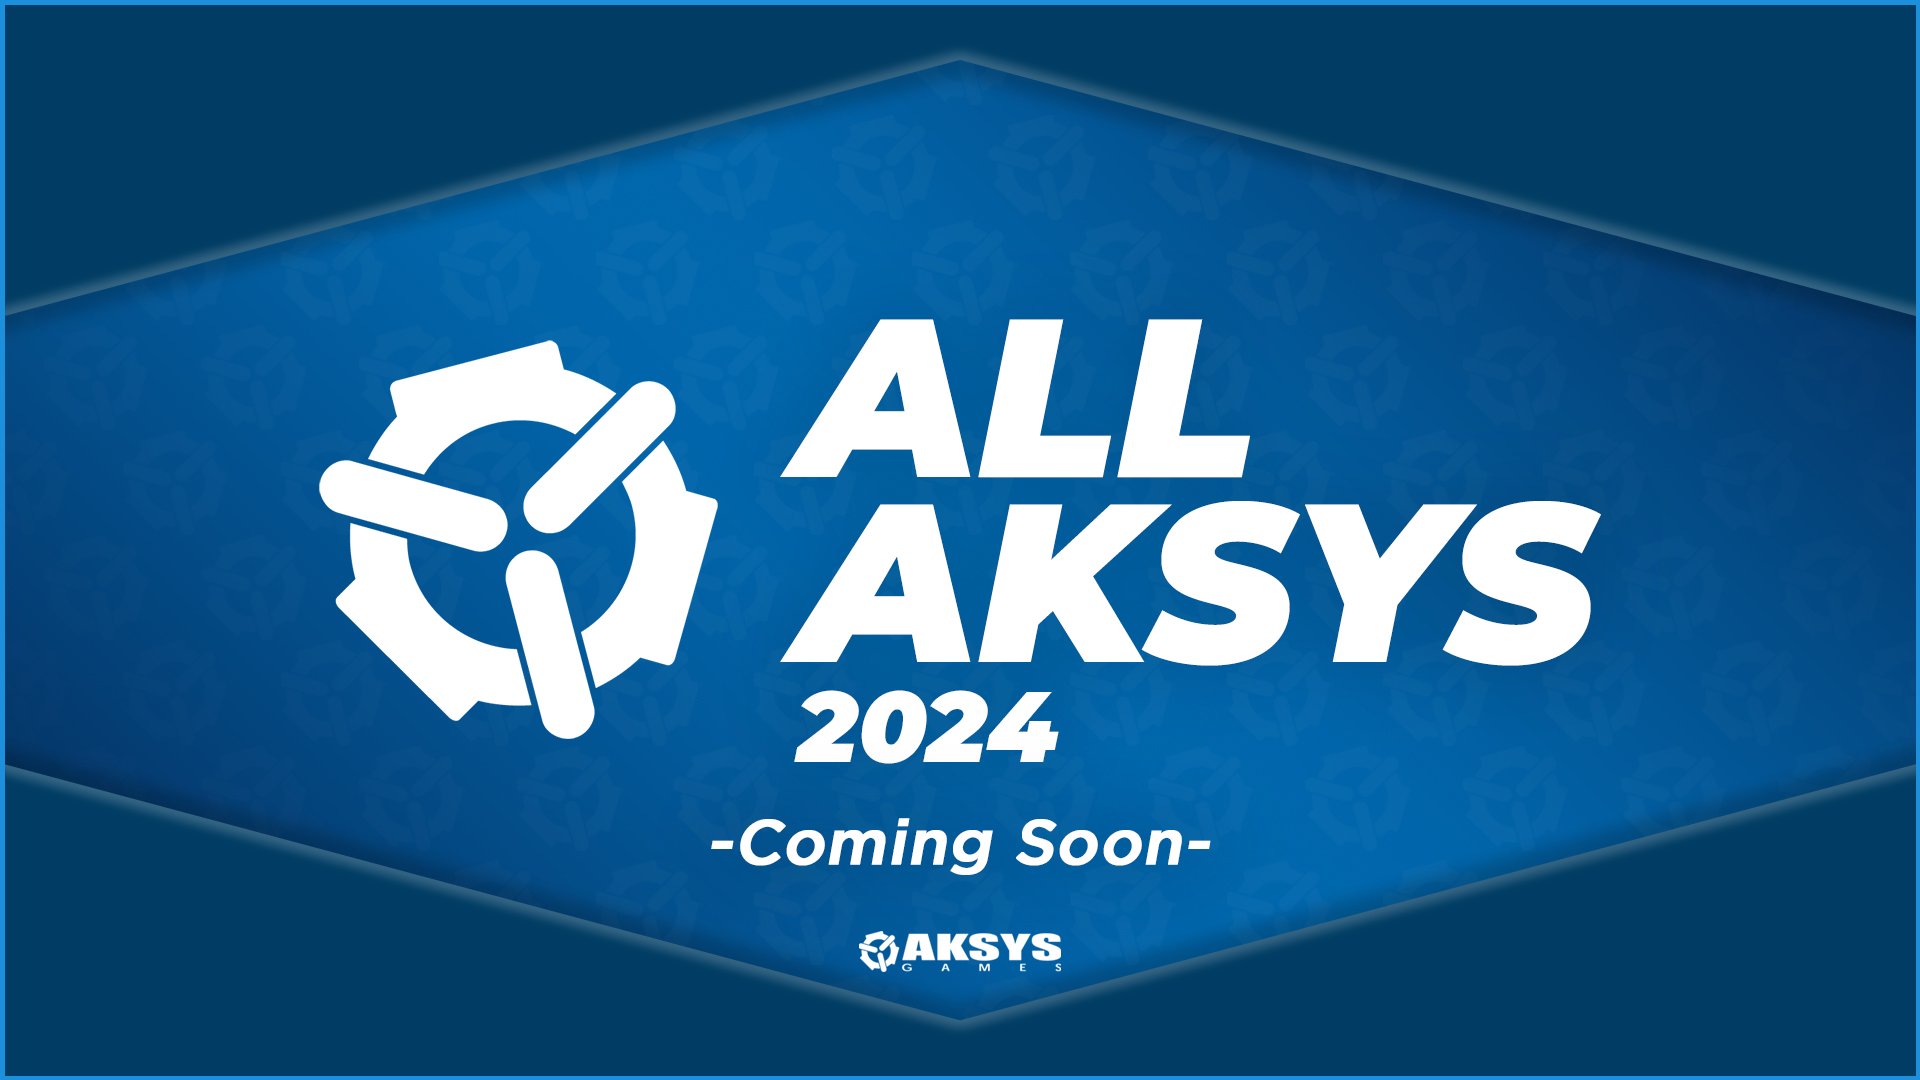 All Aksys 2024 set for February 1